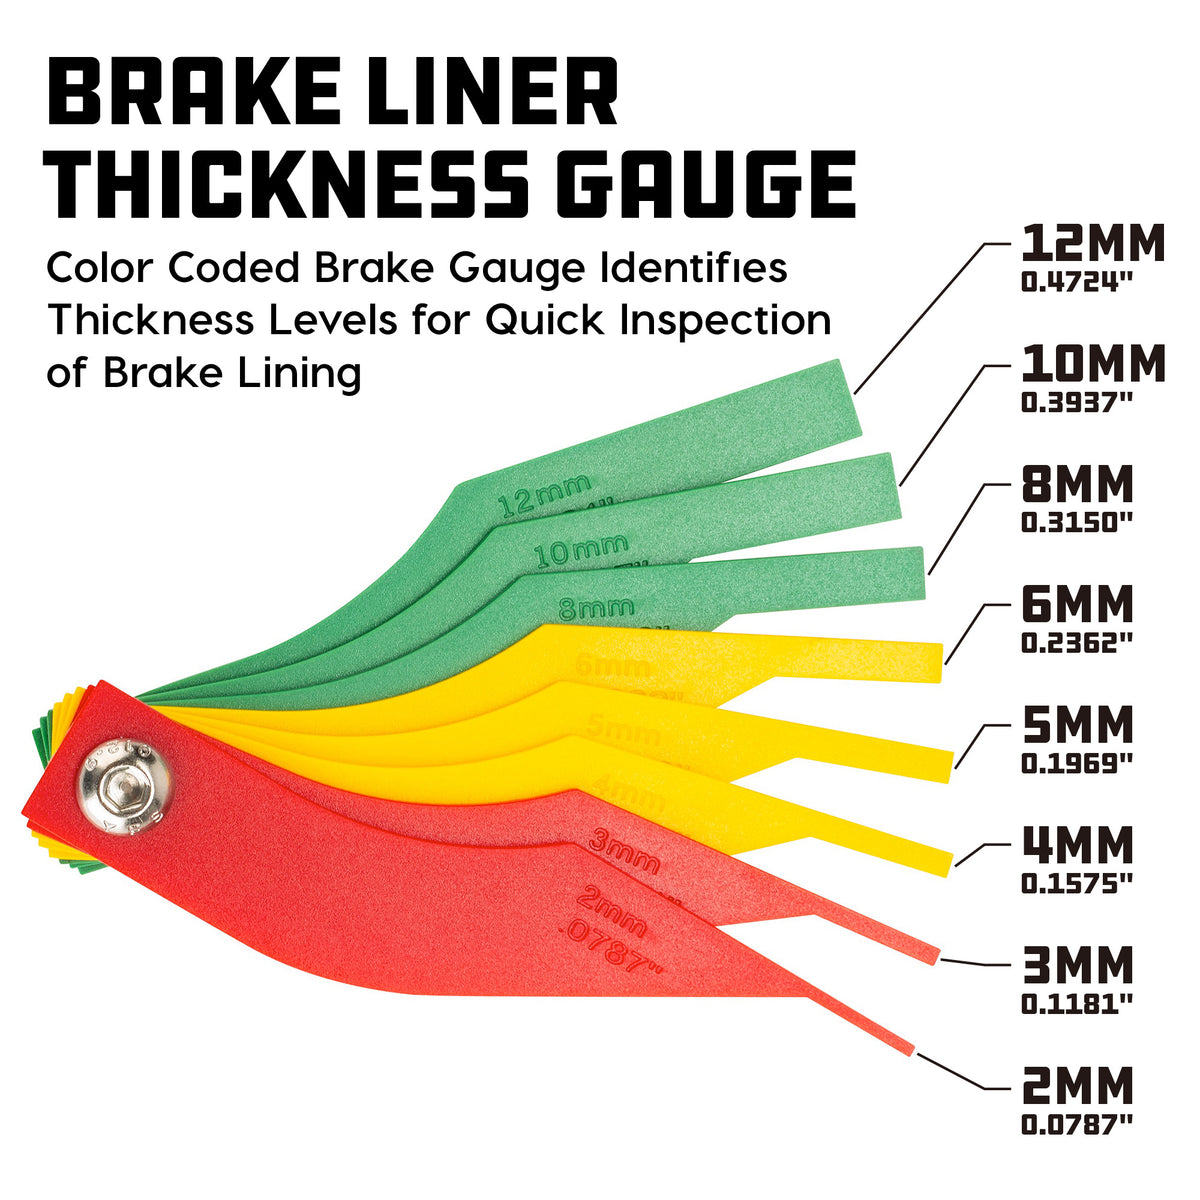 Brake Lining Thickness Gauge